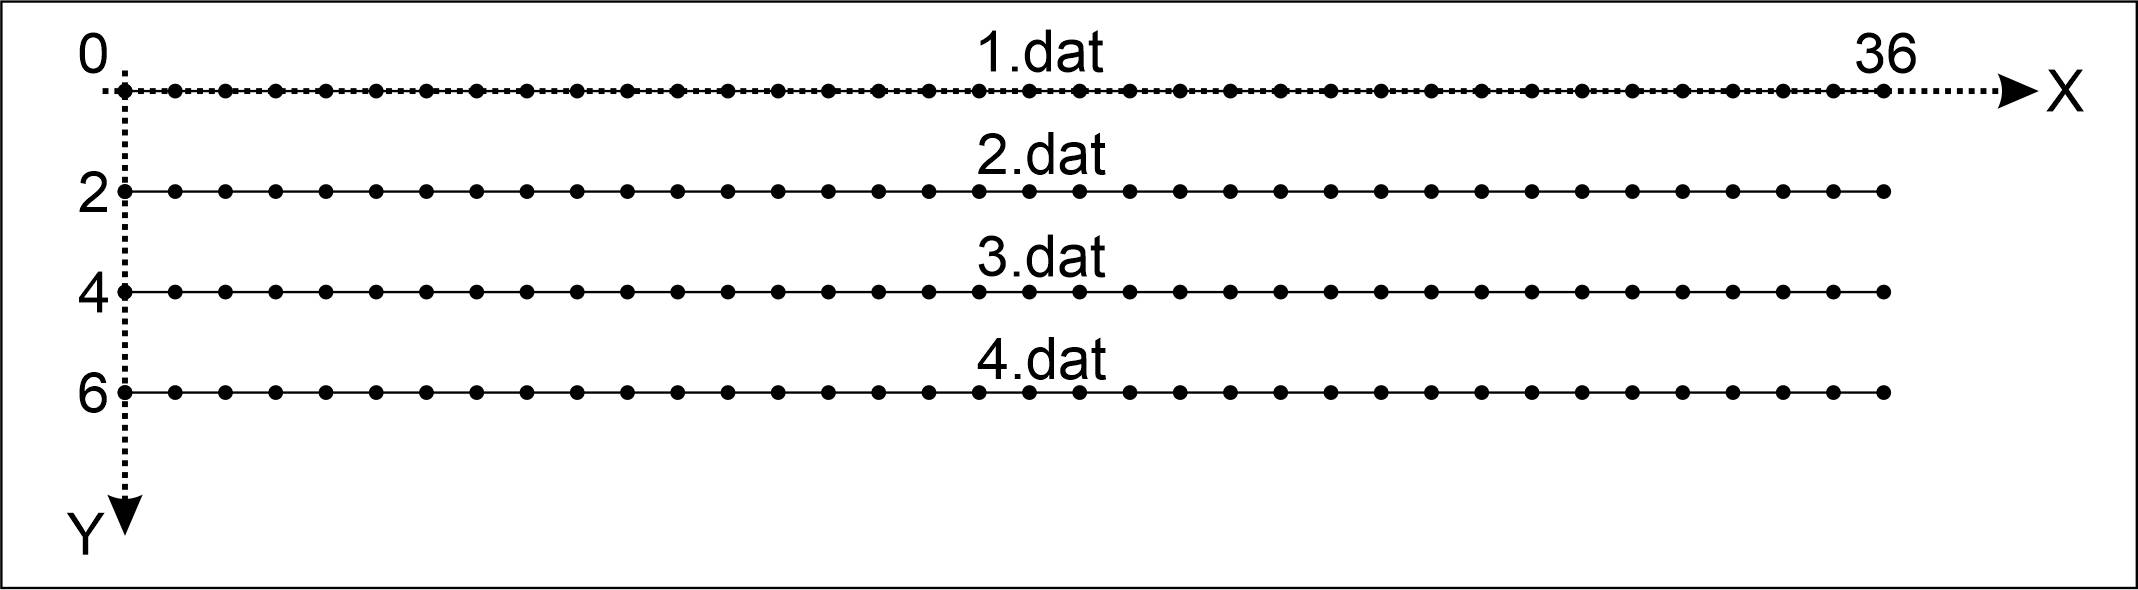 Рис. 53. Расположение профилей в соответствии с системой координат программы Res3DInv и нумерация файлов данных